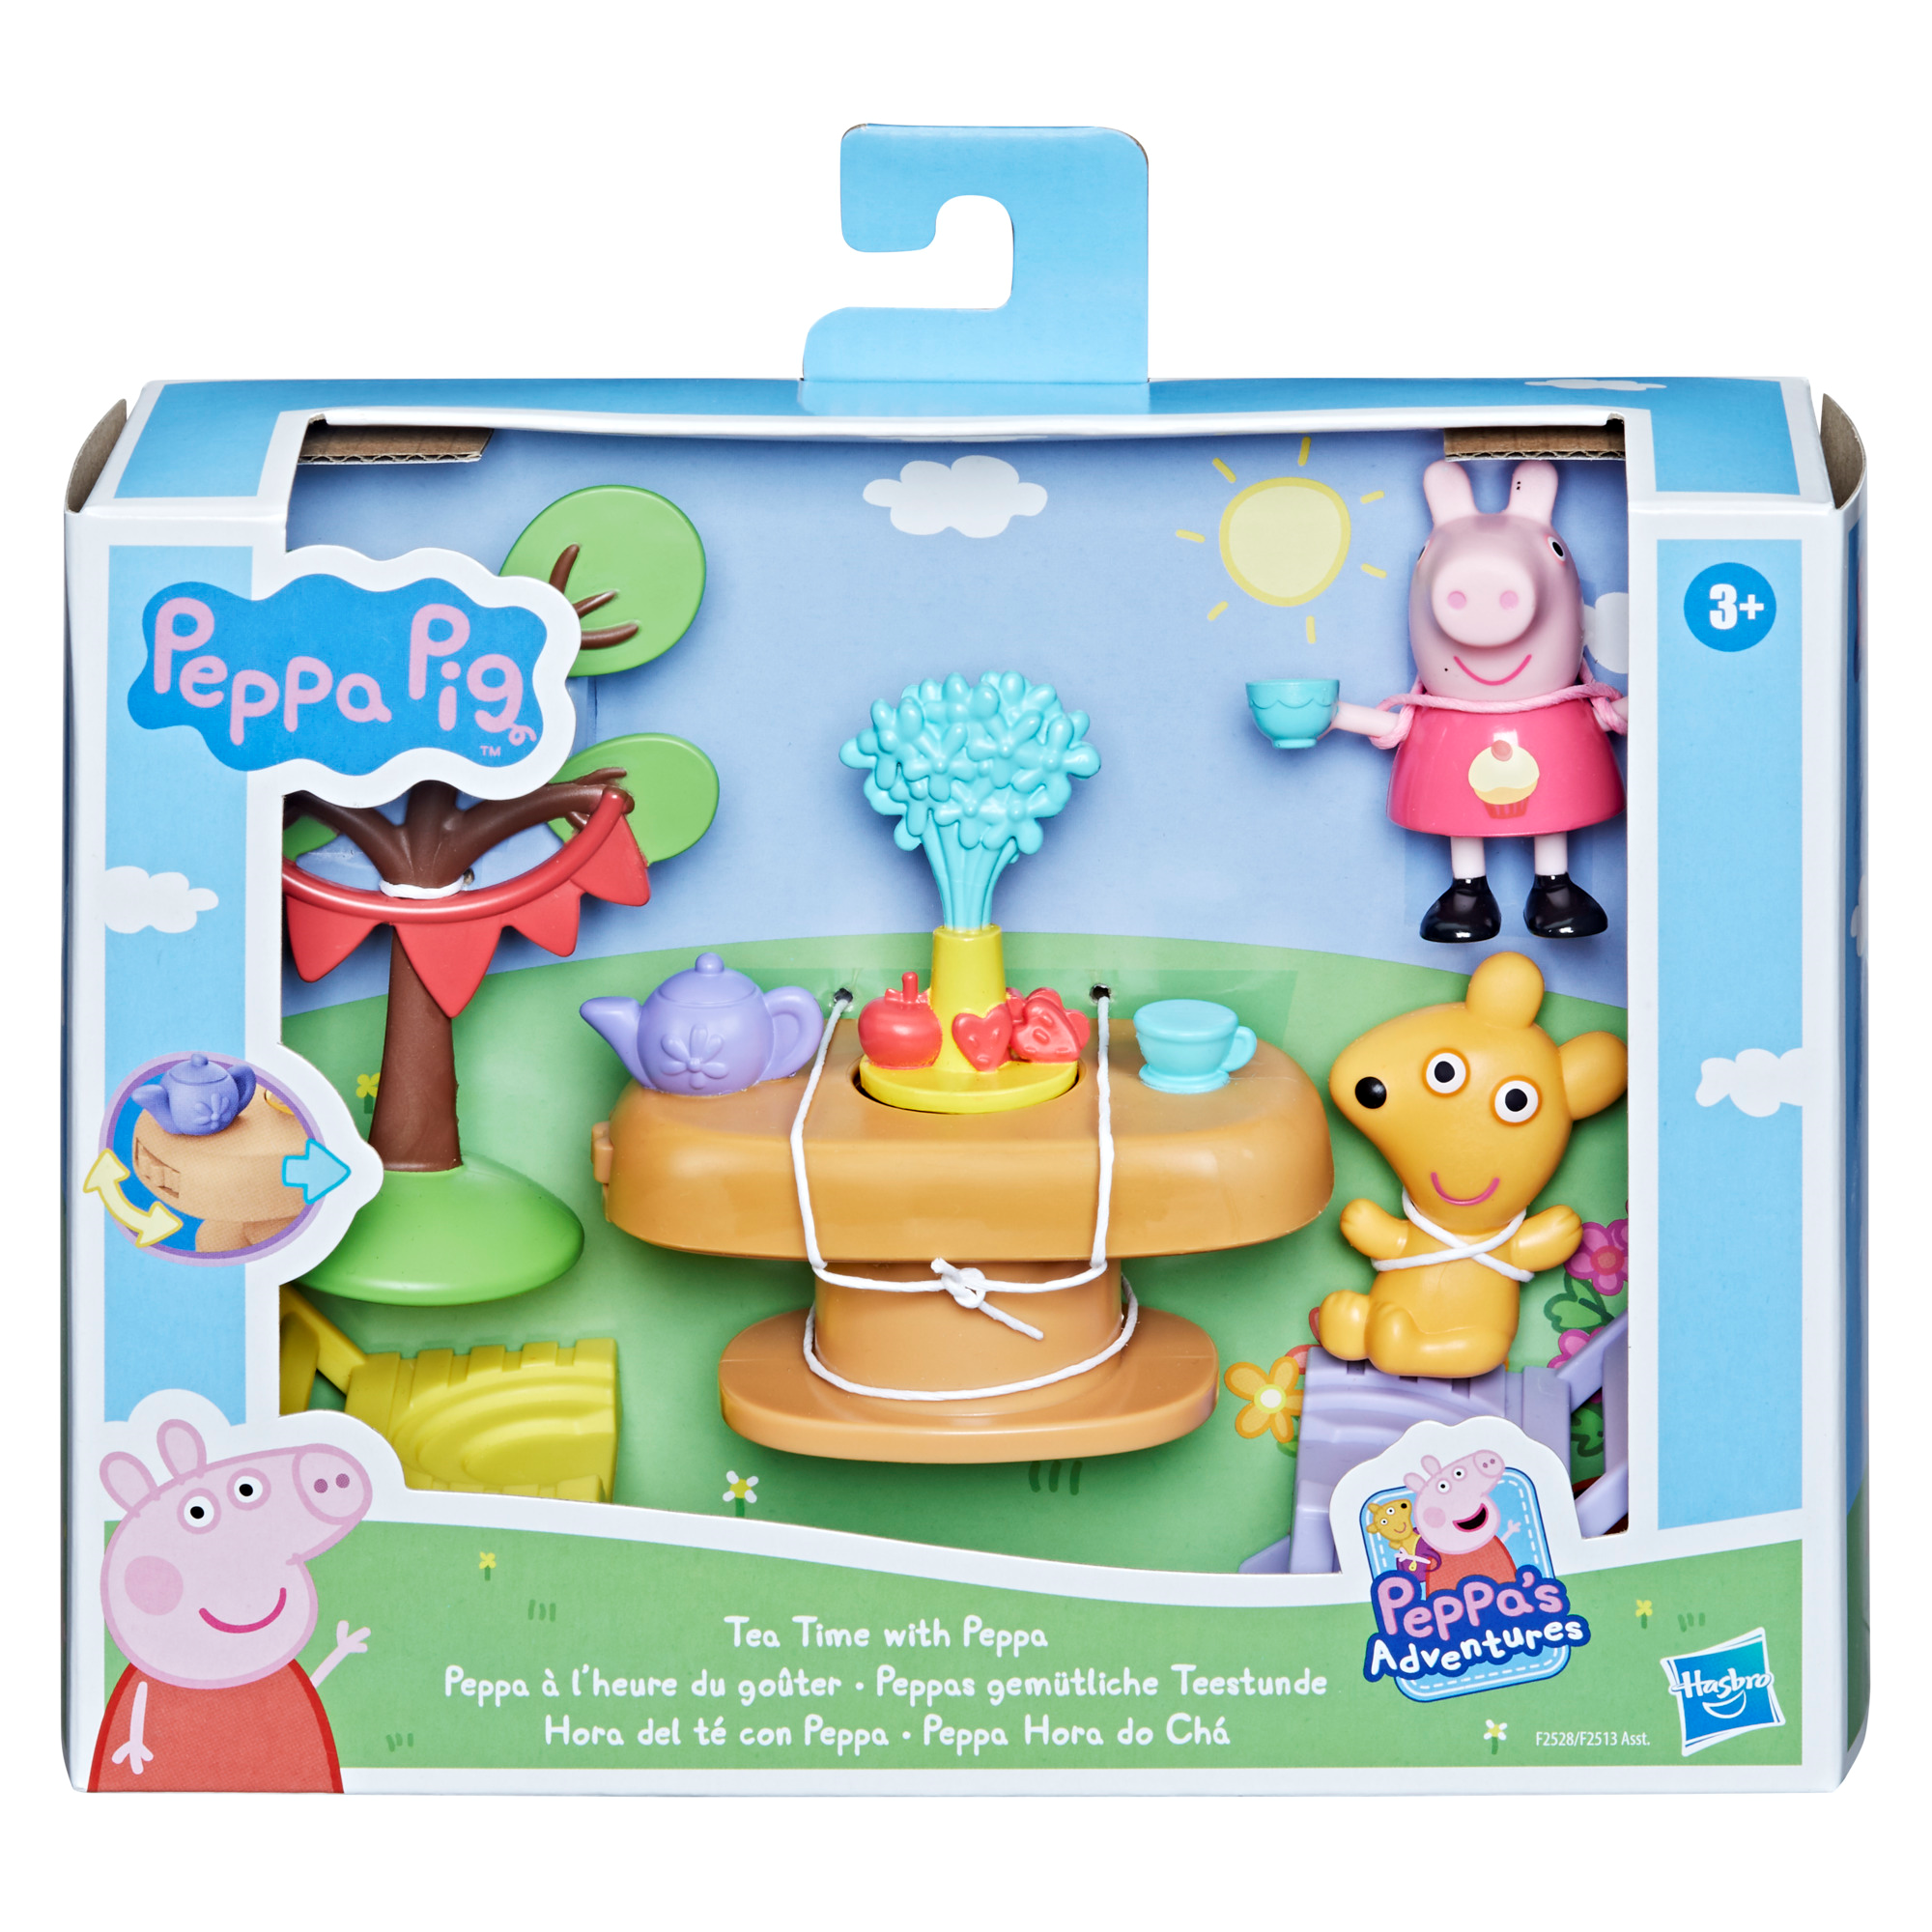 Peppa pig - gli spazi di peppa pig, set di accessori giocattolo con il personaggio di peppa pig e 5 accessori, per bambini dai 3 anni in su - PEPPA PIG